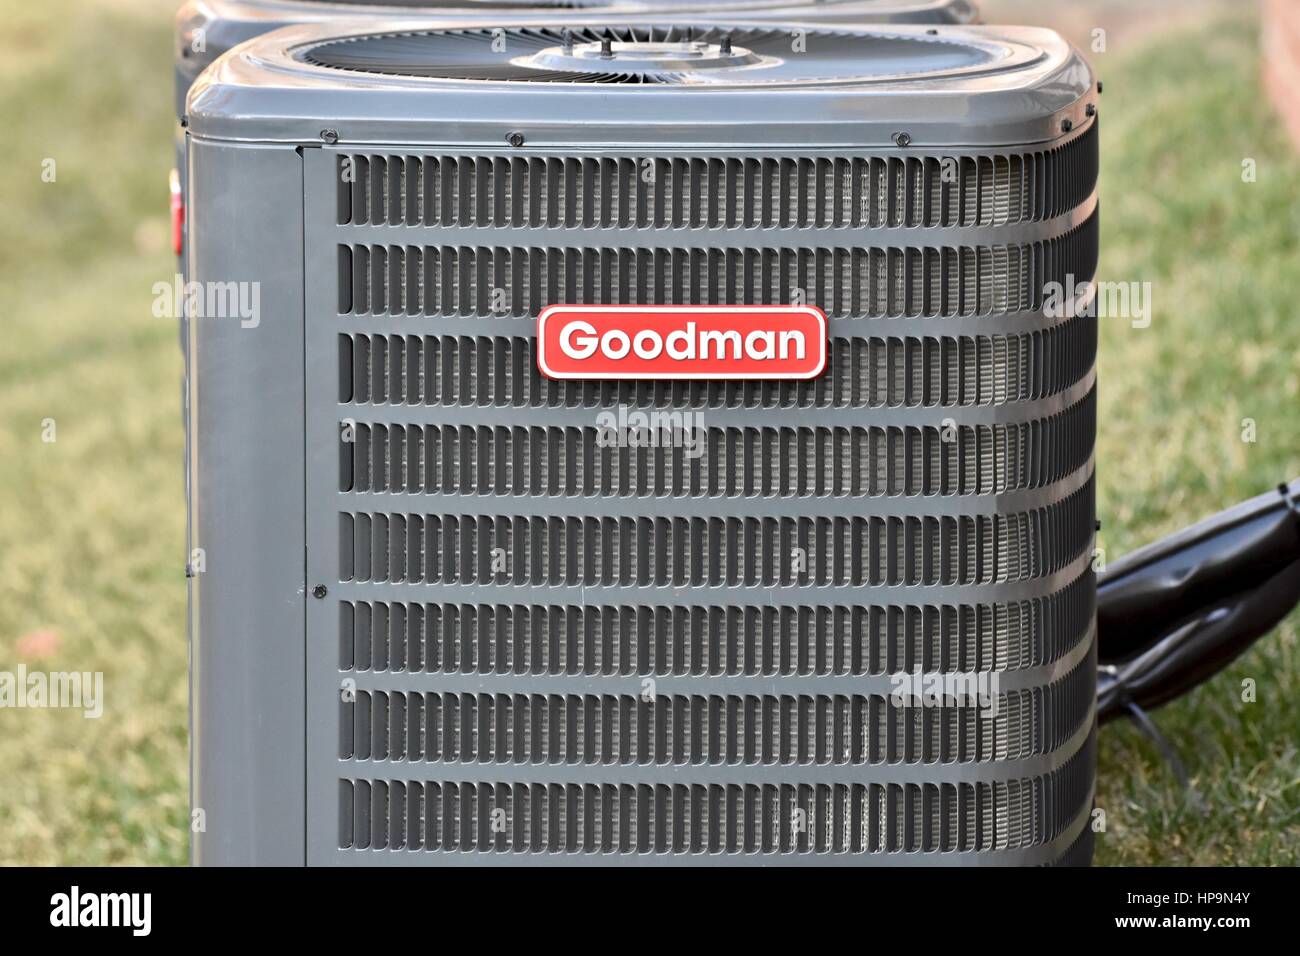 Goodman à l'extérieur de l'unité de climatisation Photo Stock - Alamy